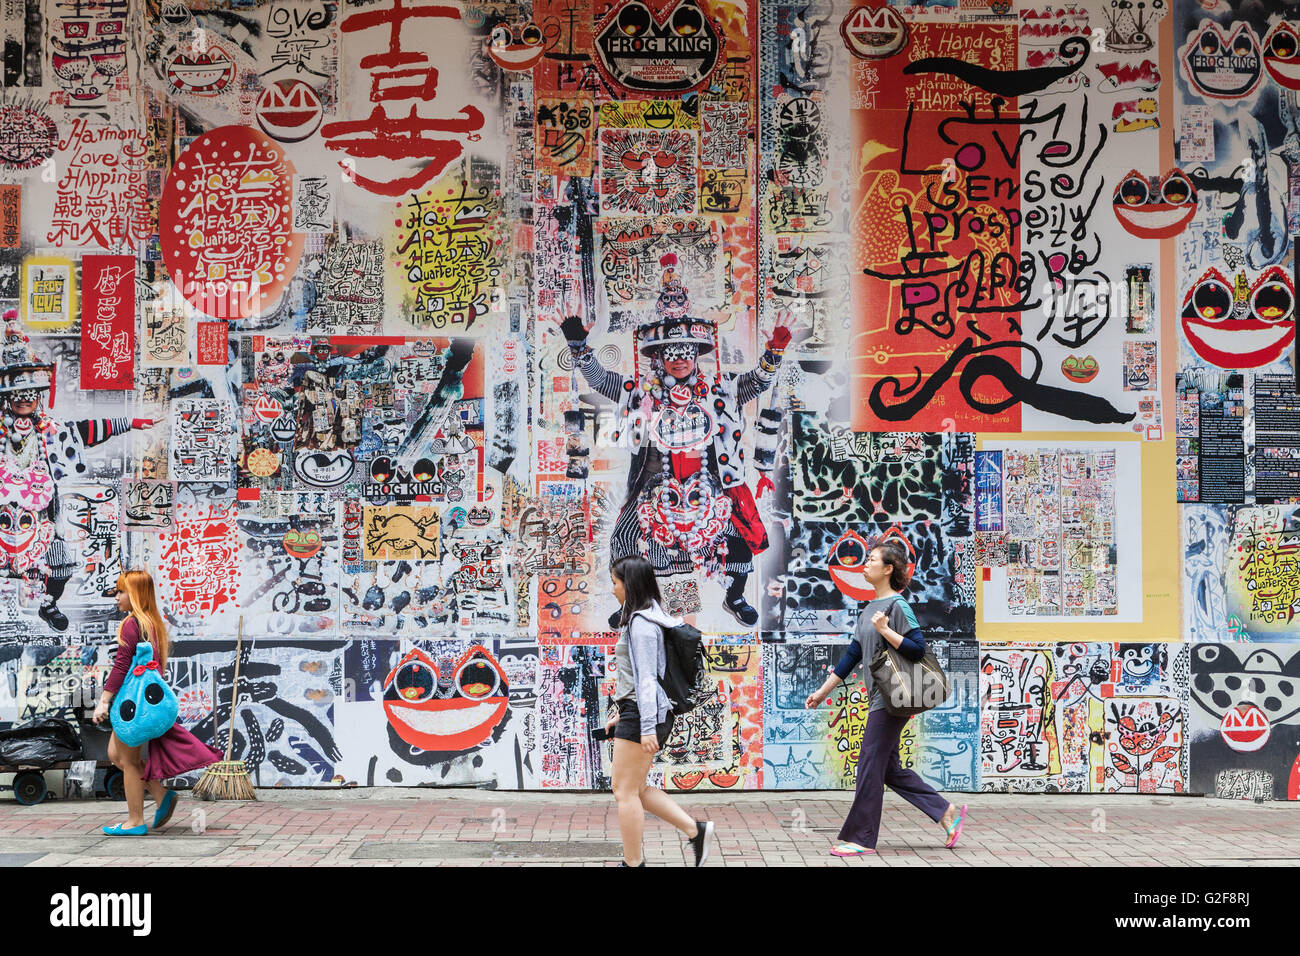 Hong Kong, gran mural, el arte público de caligrafía e imágenes en una calle transitada, un típico paisaje urbano, graffiti muro cubierto Foto de stock